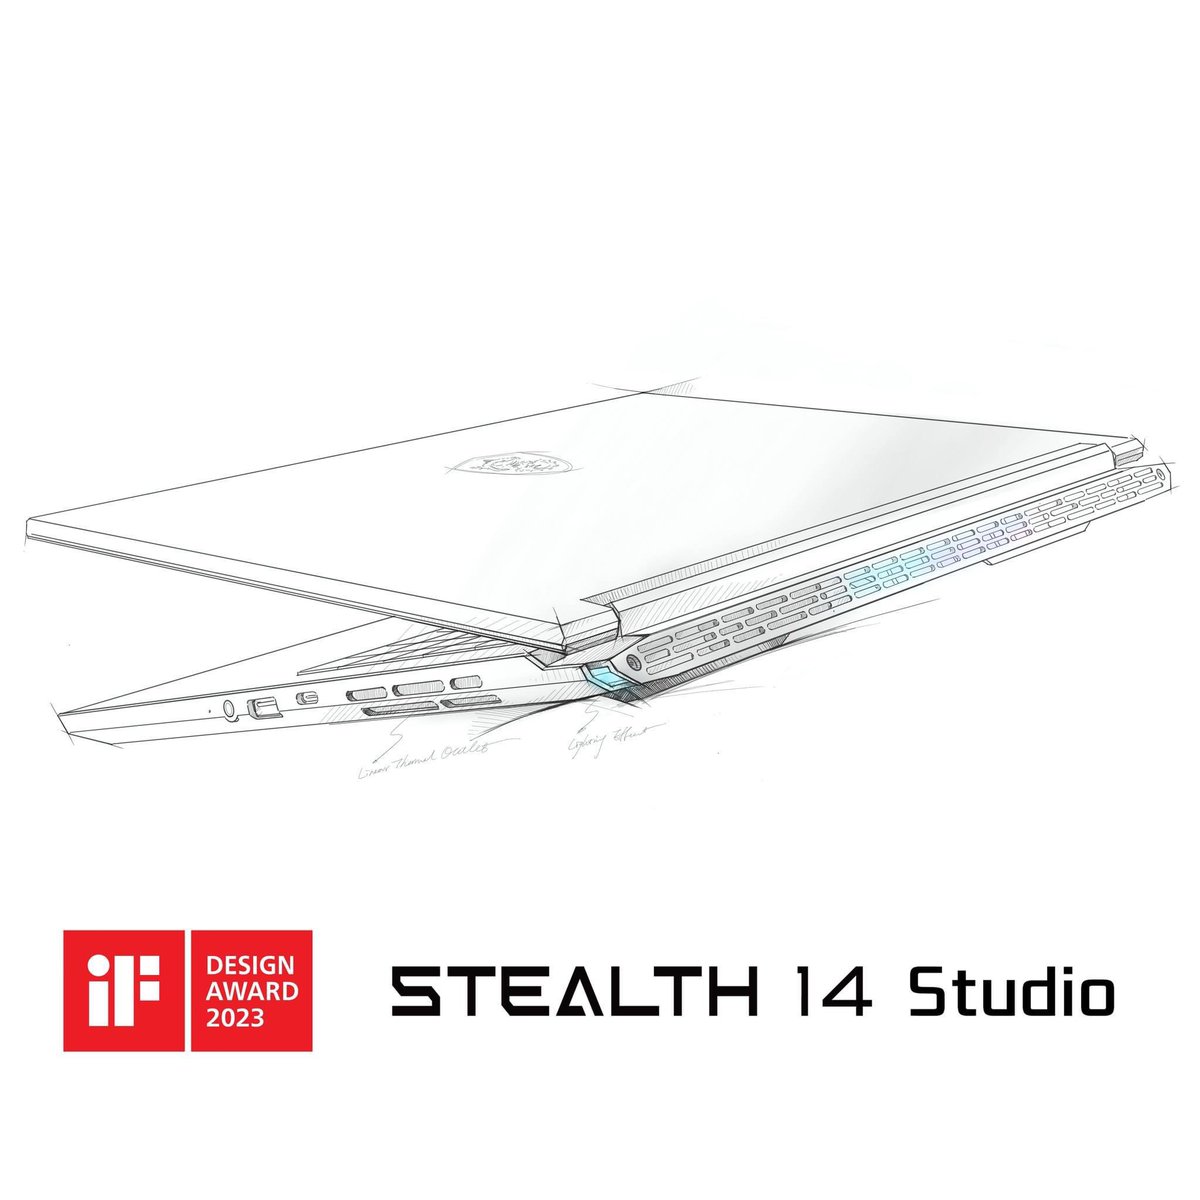 Красиві ноутбуки - це про MSI 😍

З гордістю повідомляємо, що наш Stealth 14 Studio отримав iF Design Award 2023 у категорії GAMING HARDWARE / VR / AR 🏆

Згоден із таким рішенням журі престижної премії? 

#iFDesign #iFDesignAward #Stealth #Stealth14 #Thinandpowerful